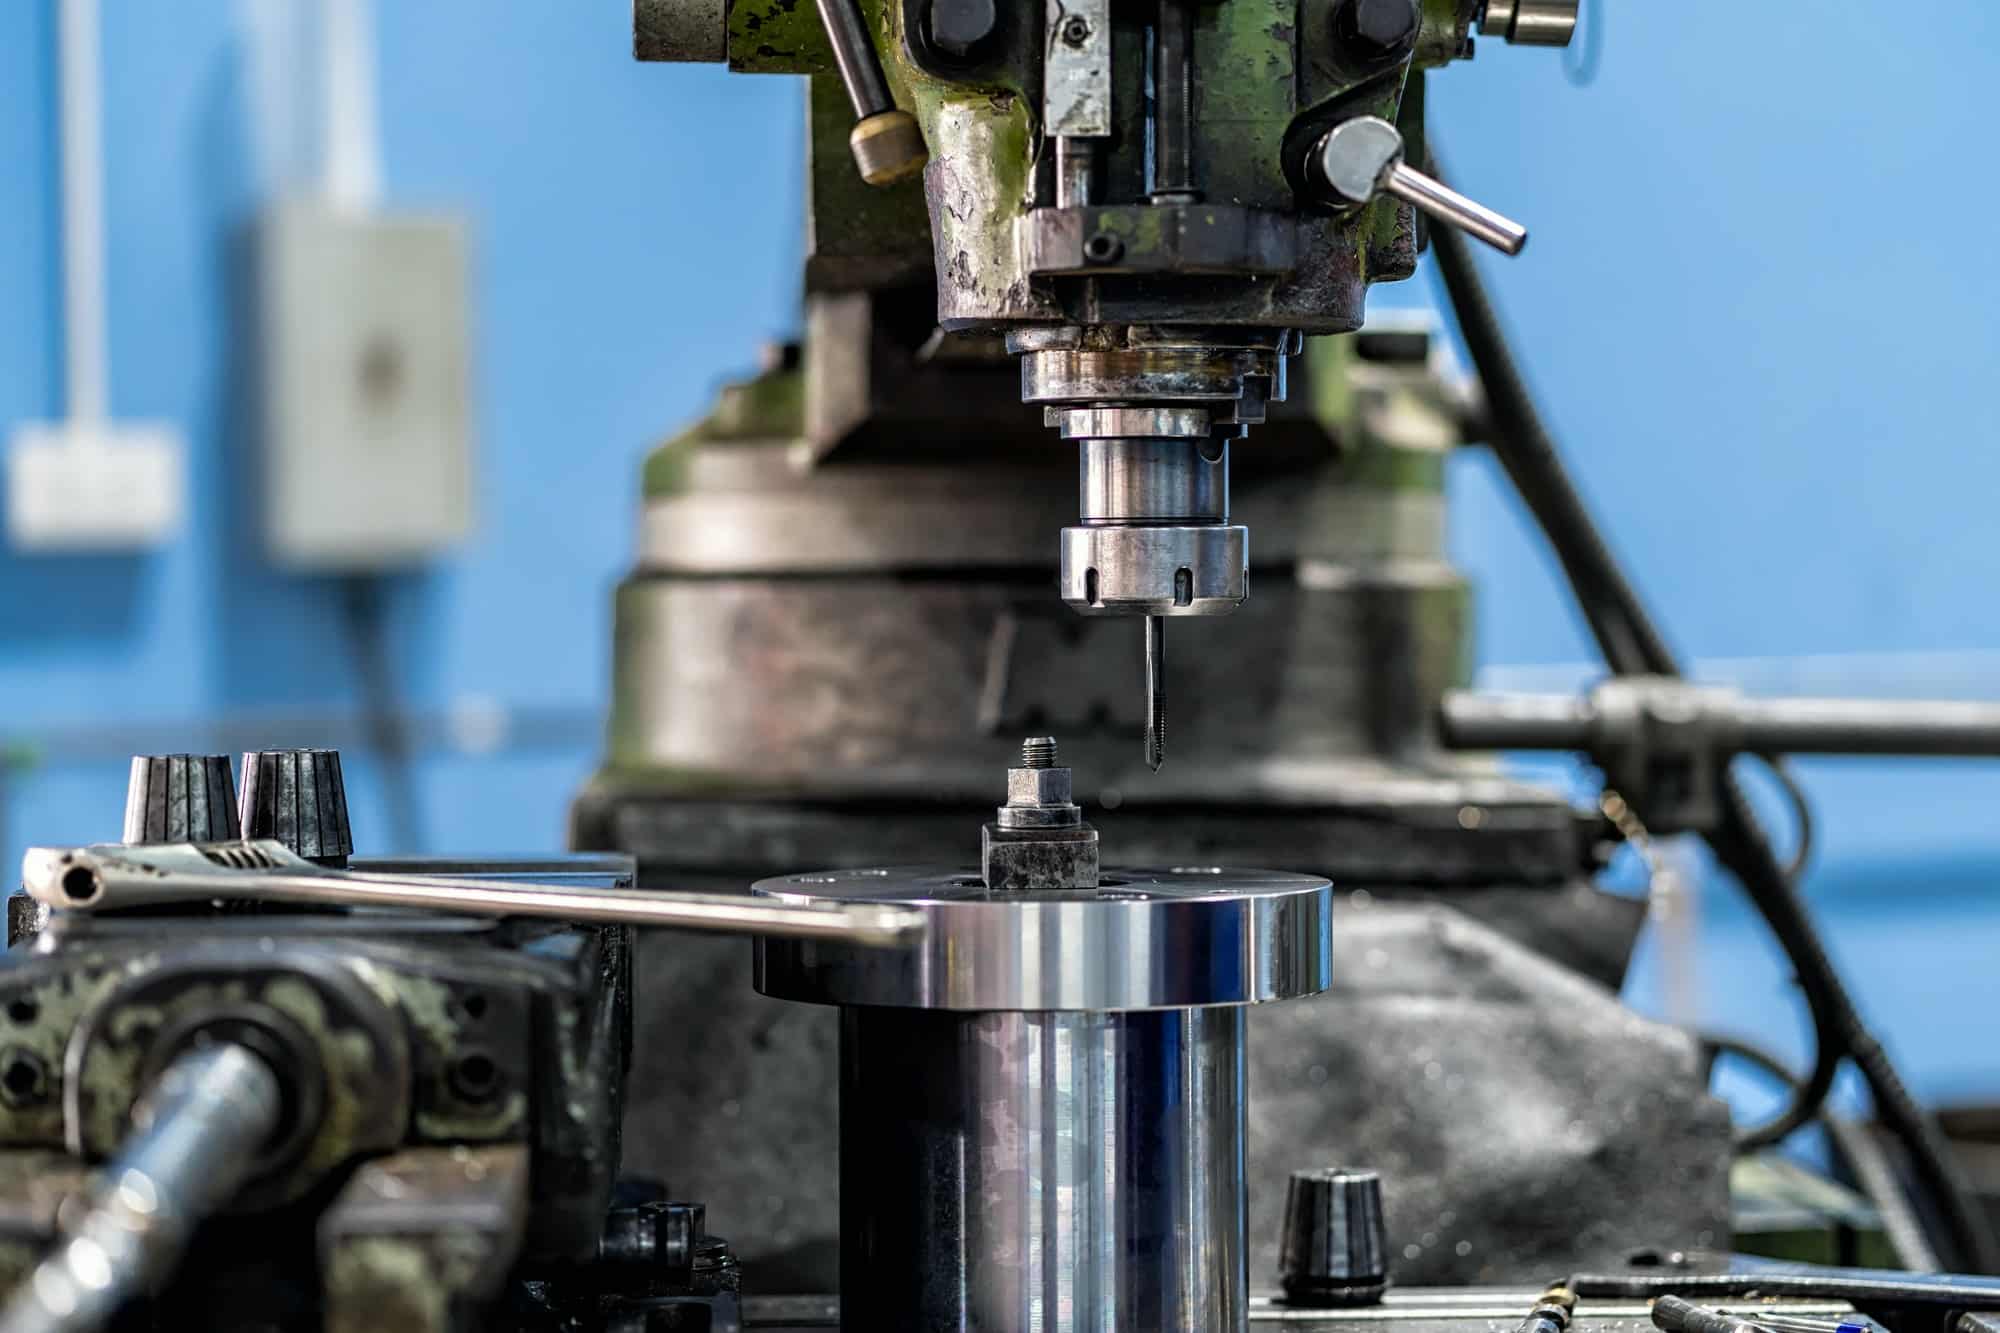 Zautomatyzowana linia produkcyjna w MetalWork Poland poddaje wypracowane elementy ogrodzeń procesowi wykańczania.